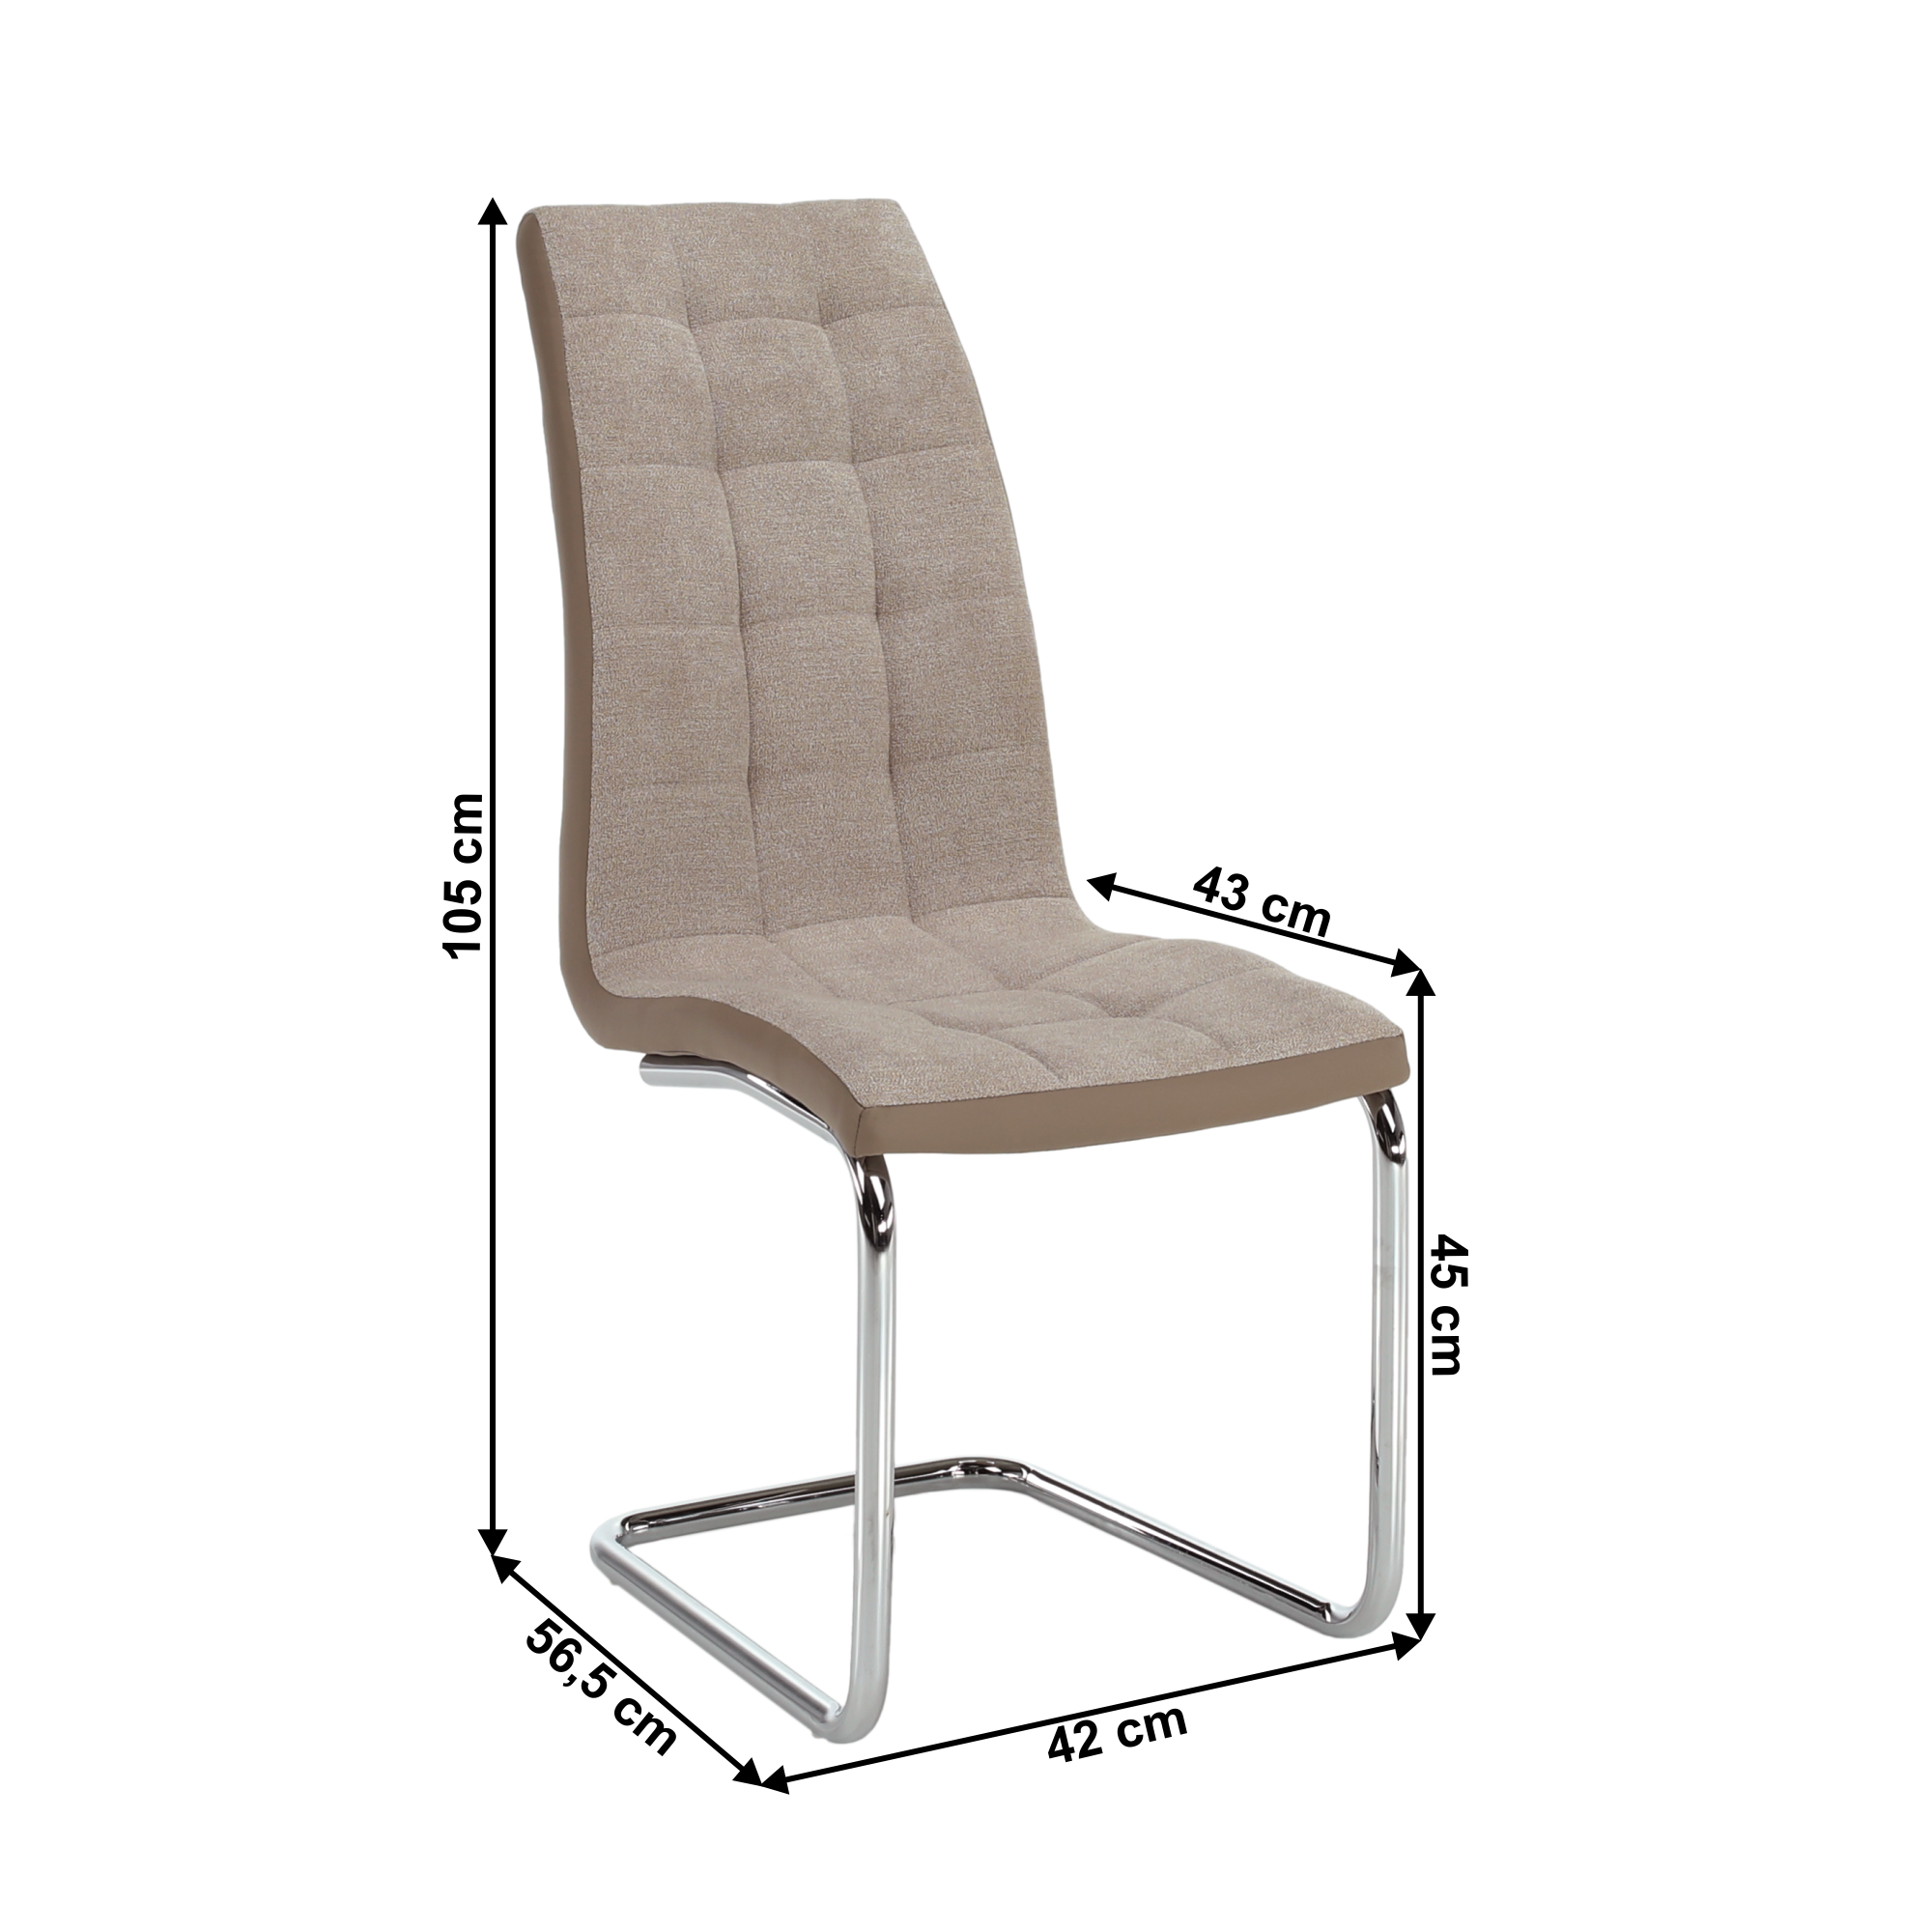 Jedálenská stolička, béžová/chróm, SALOMA NEW P1, poškodený tovar